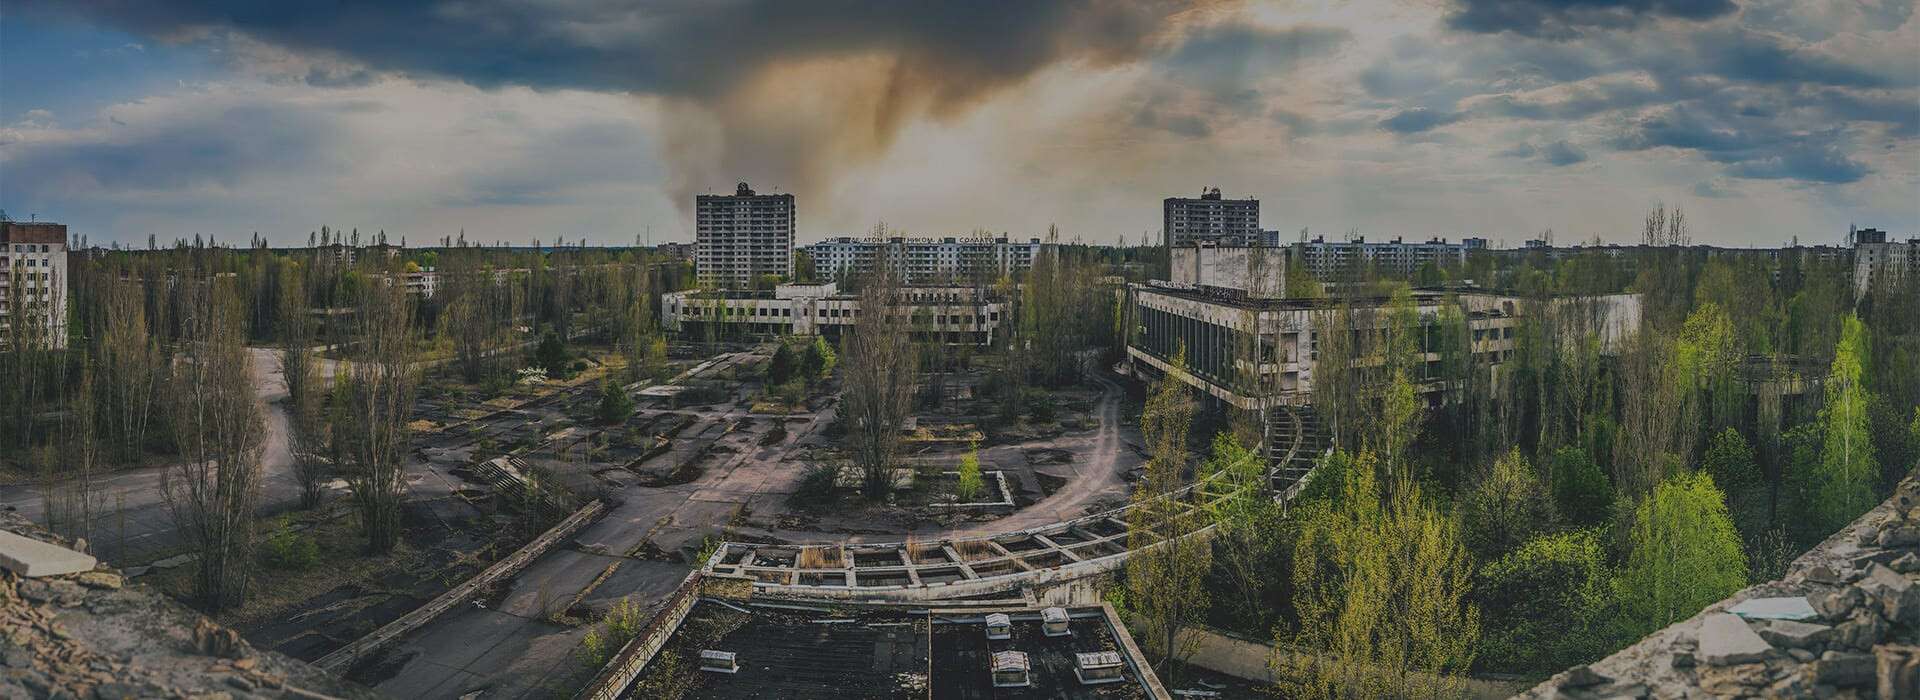 kak-popast-v-chernobyl-2